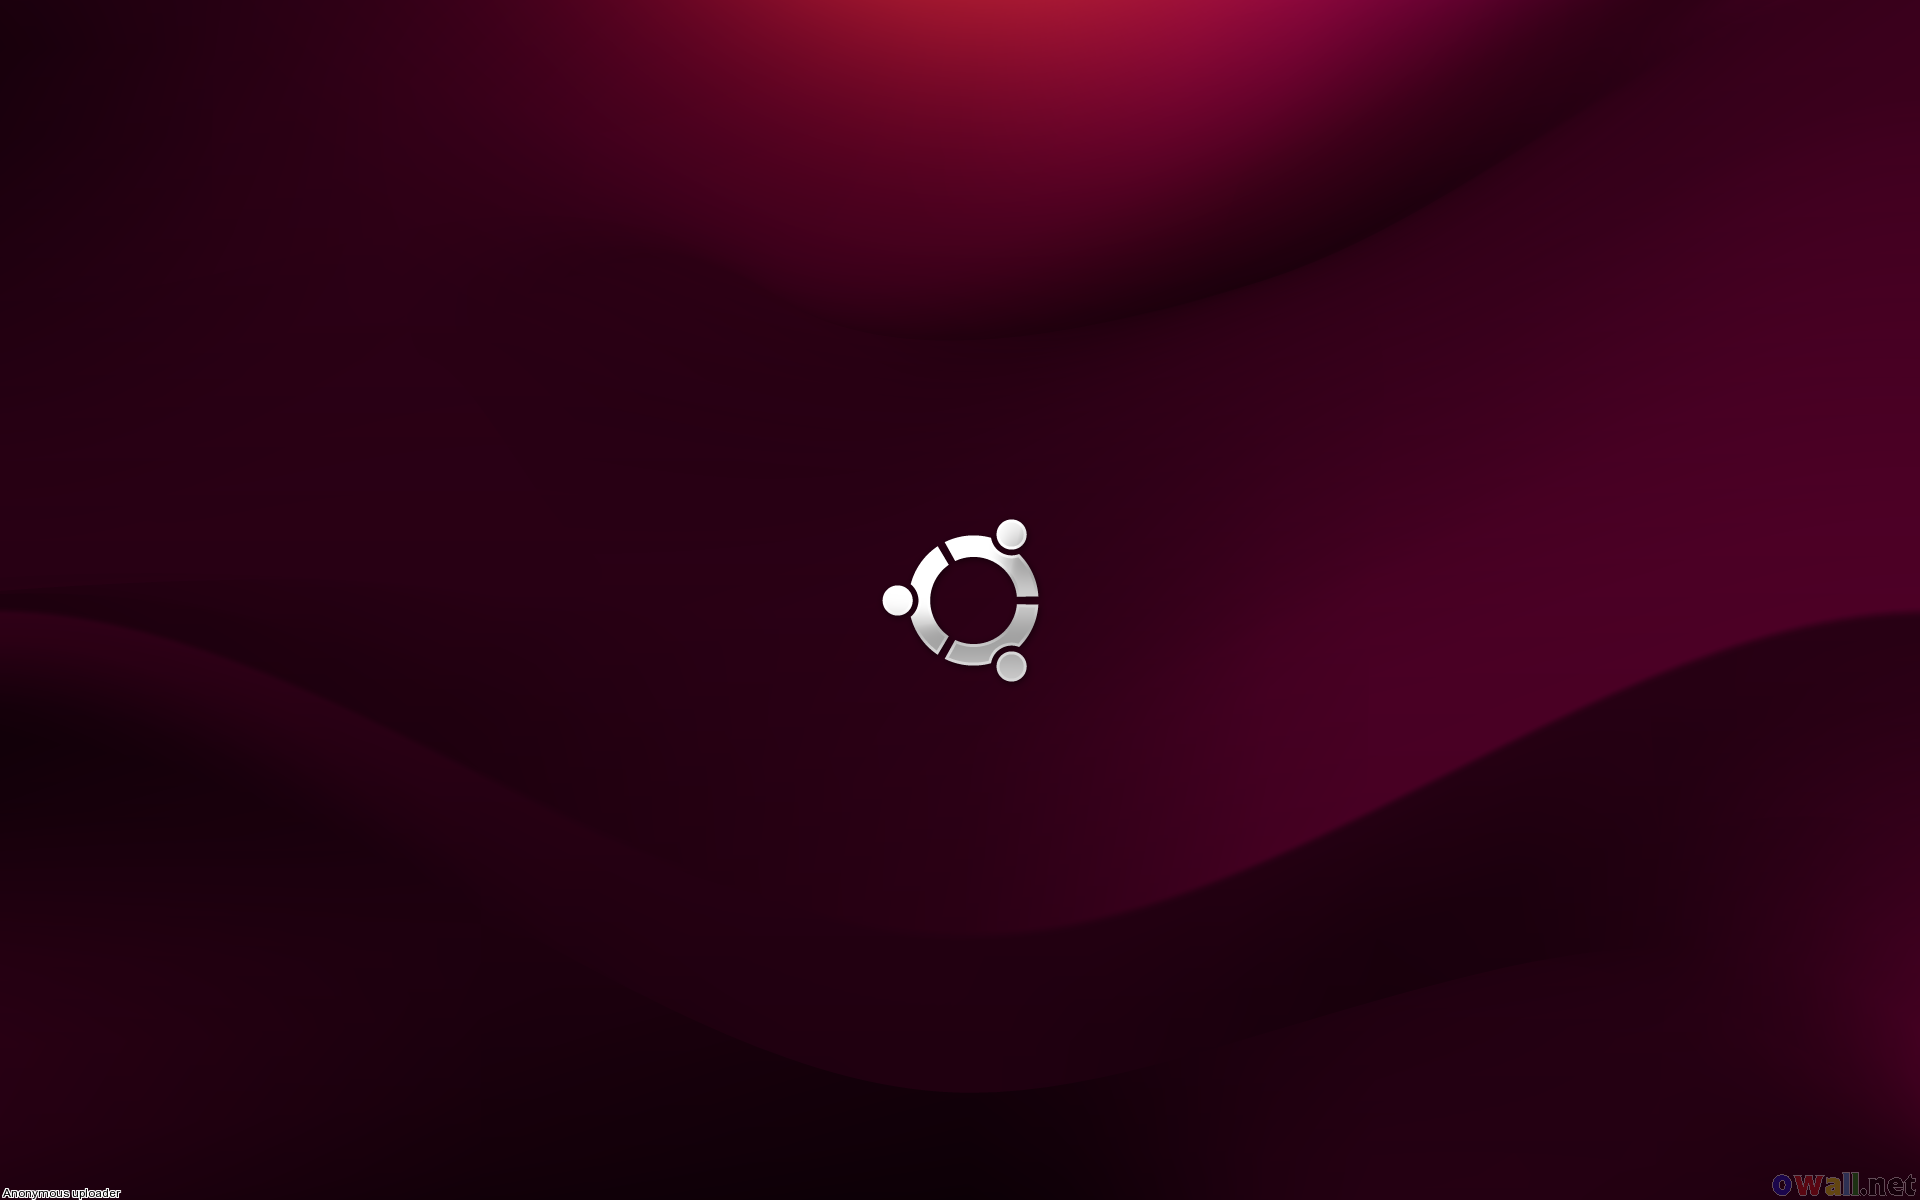 Bạn đang tìm kiếm một hình nền máy tính Linux Ubuntu đẹp mắt cho máy tính của mình? Đừng lo lắng, chúng tôi có thể cung cấp cho bạn các hình nền Ubuntu miễn phí với chất lượng tuyệt vời. Nhấp vào hình ảnh để tải về ngay bây giờ và trang trí màn hình của bạn với phong cách hoàn toàn mới!